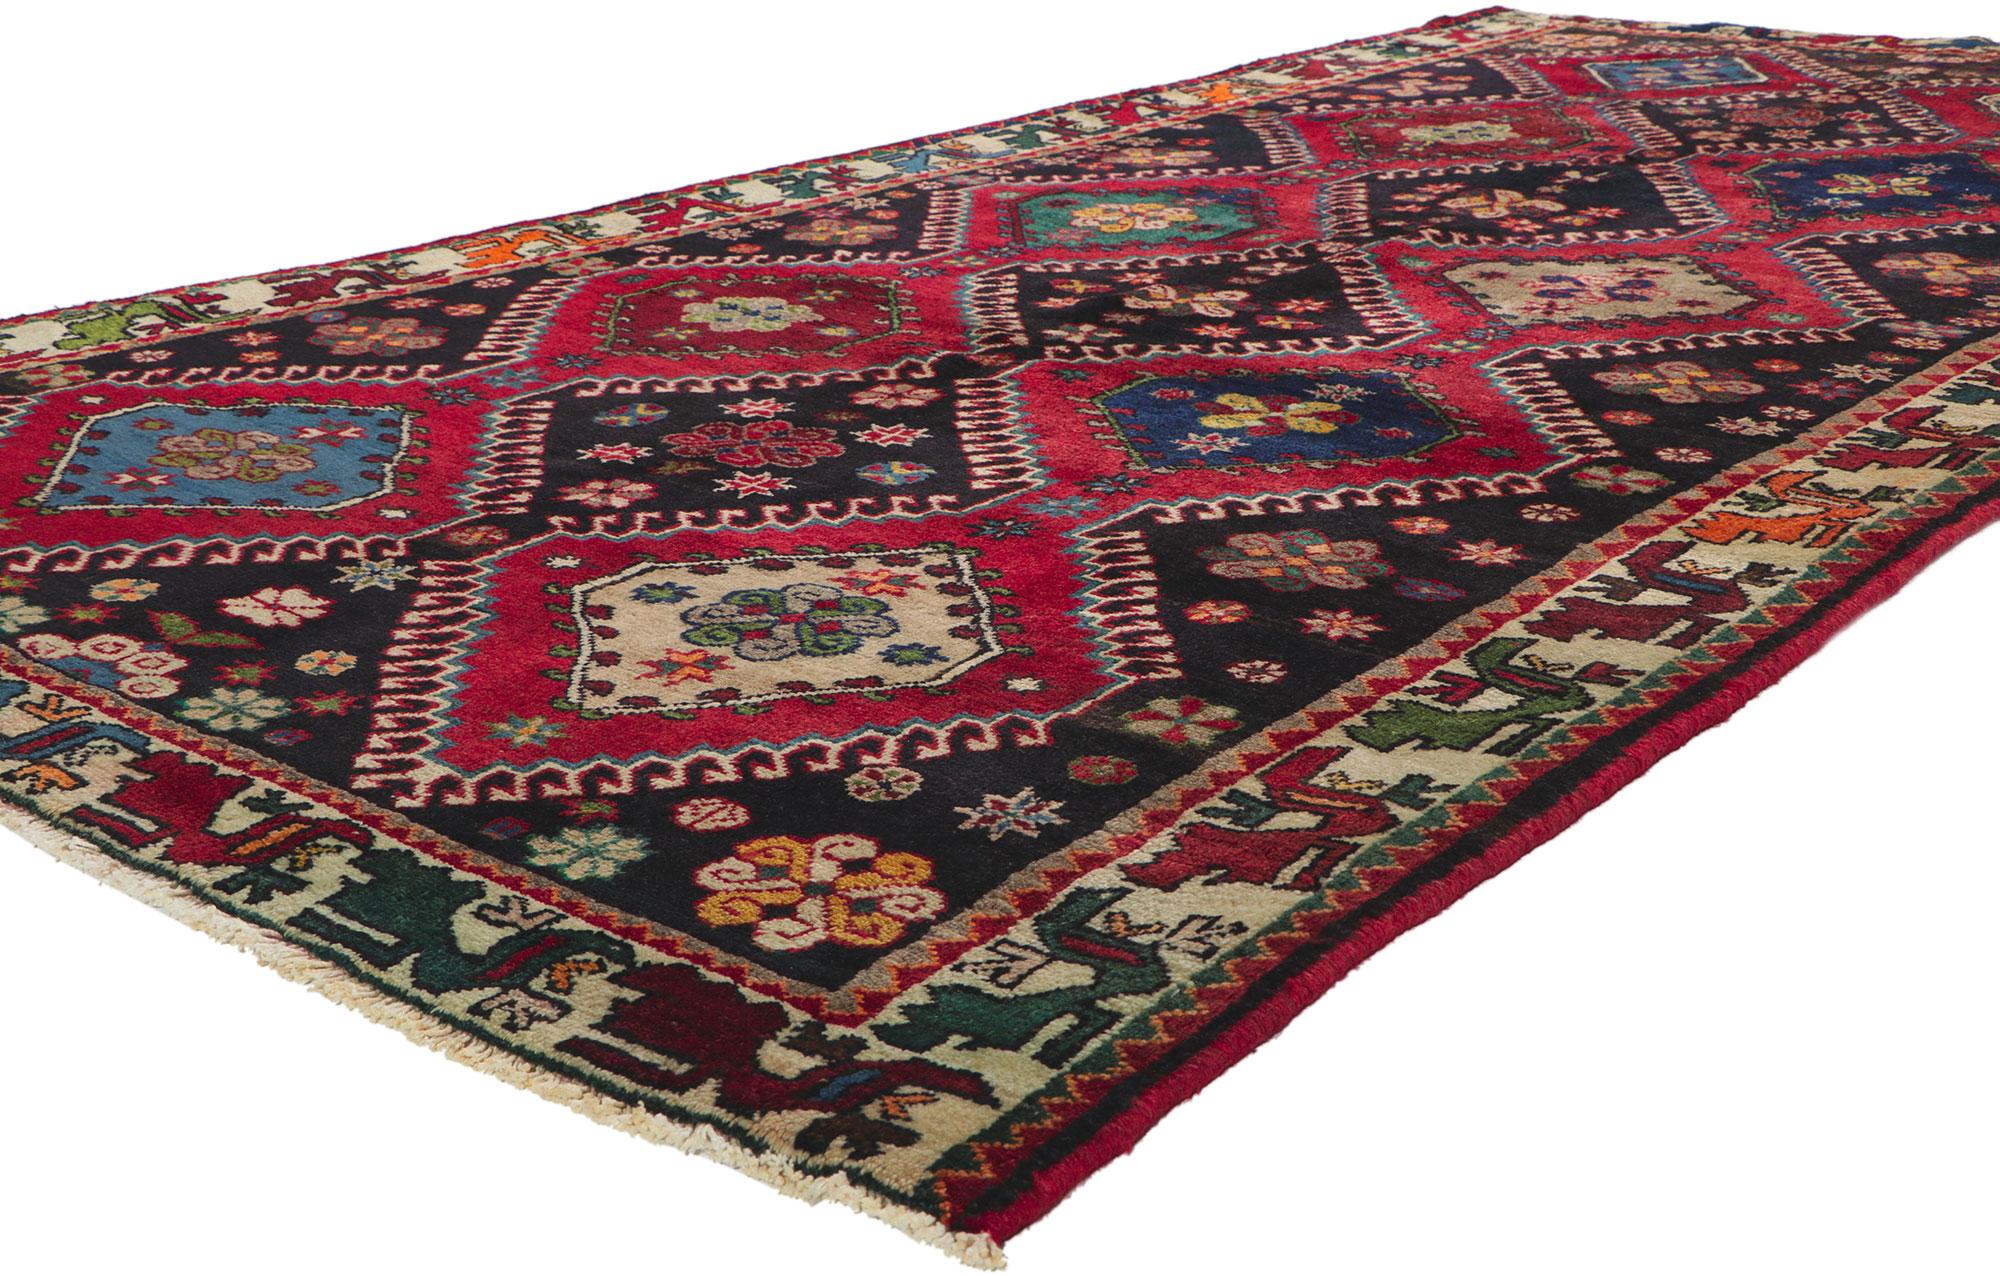 61038 Tapis Vintage Persan Shiraz, 05'02 x 09'11. Une histoire enchanteresse se déroule dans l'étreinte de ce tapis Shiraz persan vintage en laine nouée à la main. Imaginez le nomade douillet qui tisse un enchantement tribal dans chaque fil. Le